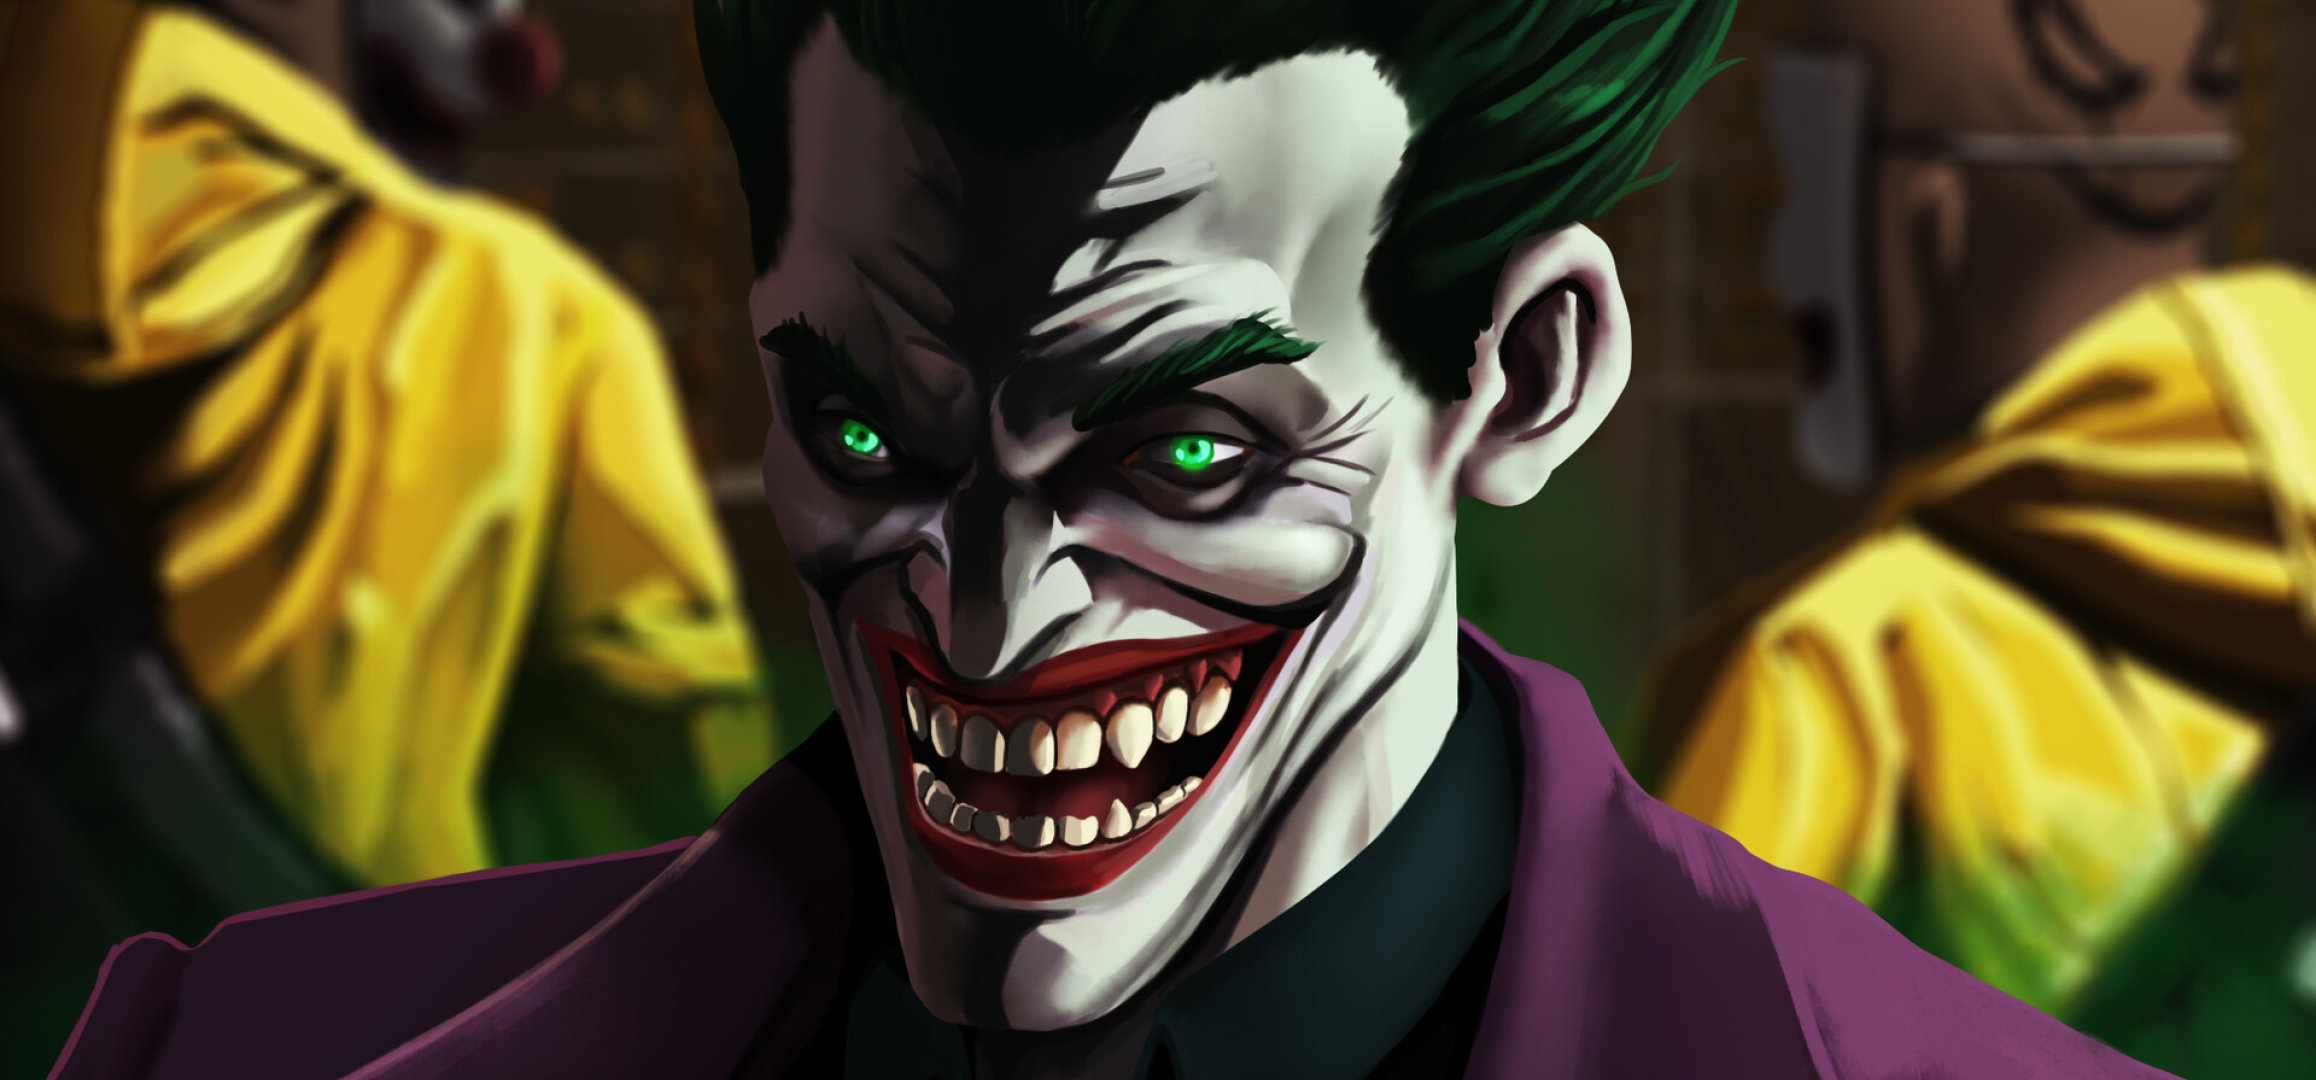 2316x1080 Resolution An Evil Joker Laugh 2316x1080 Resolution Wallpaper ...